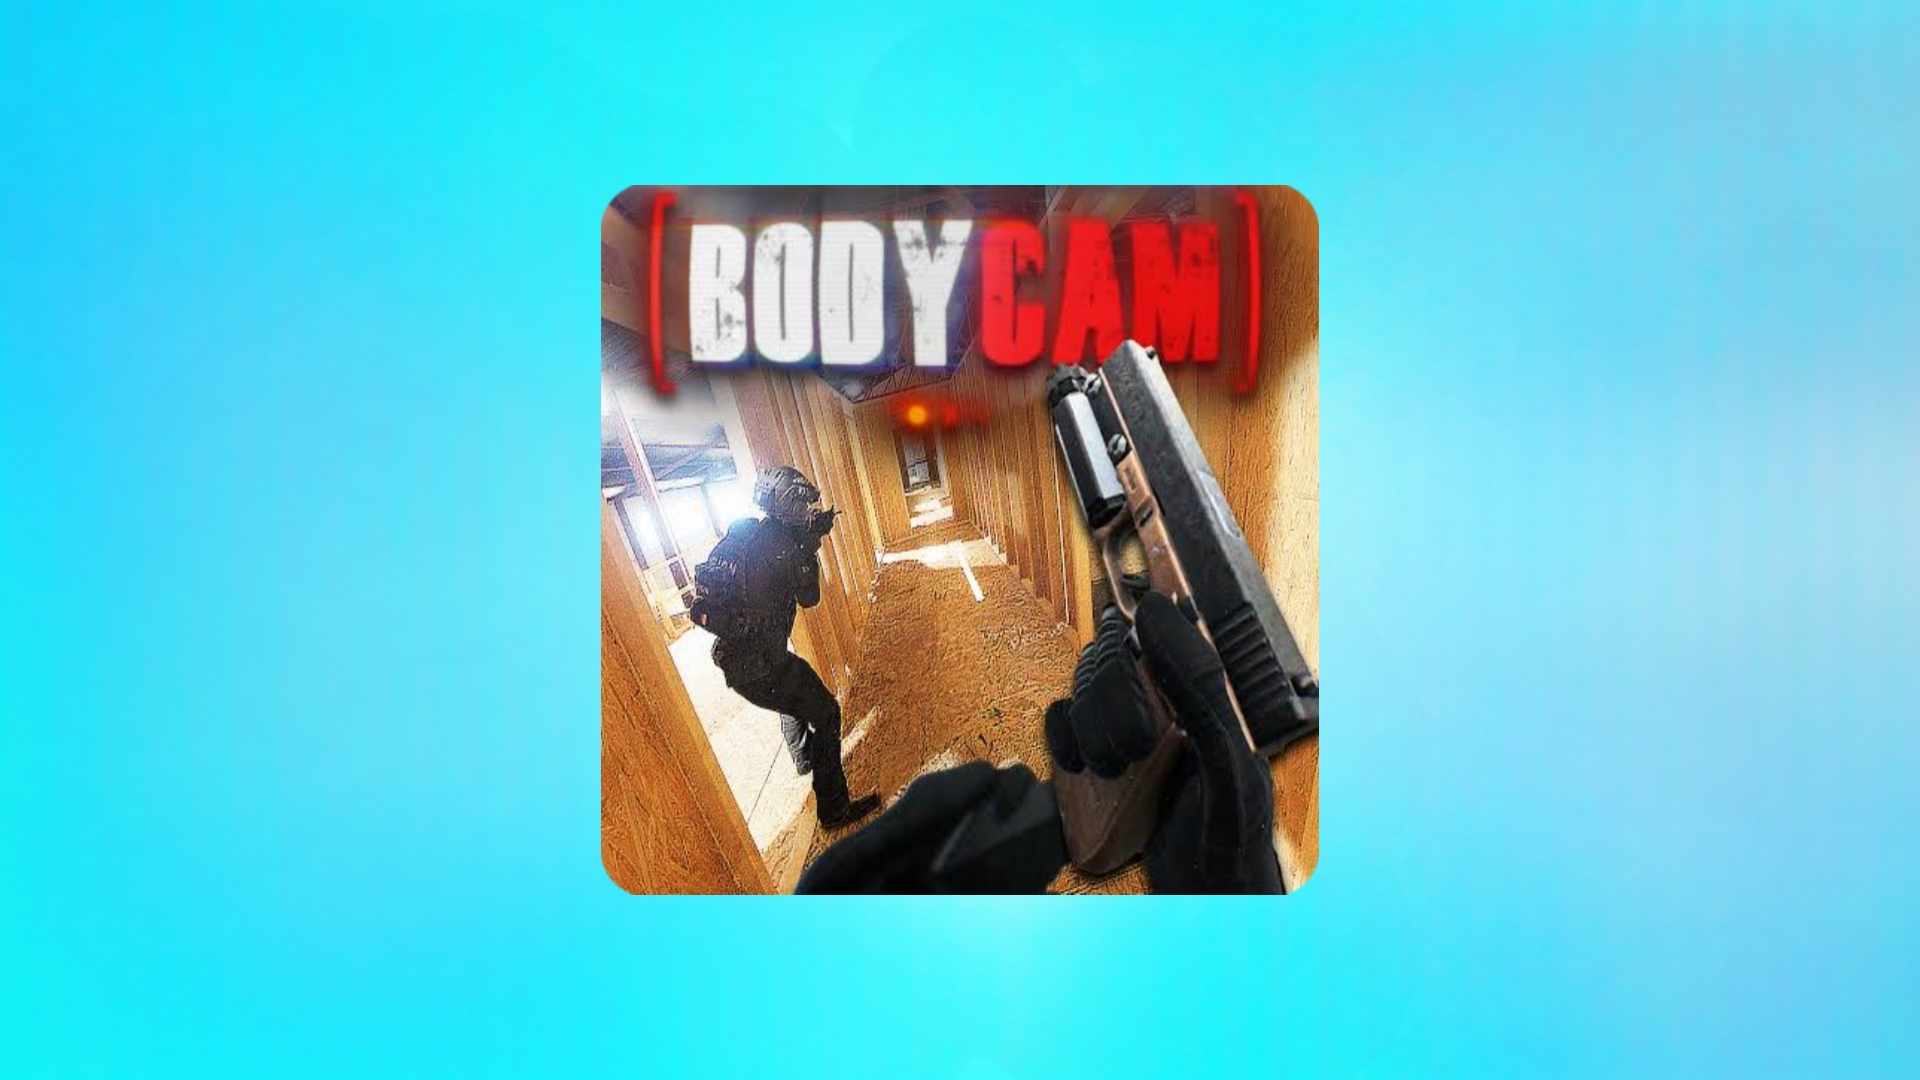 הורד משחק Bodycam למחשב בחינם עם קישור ישיר